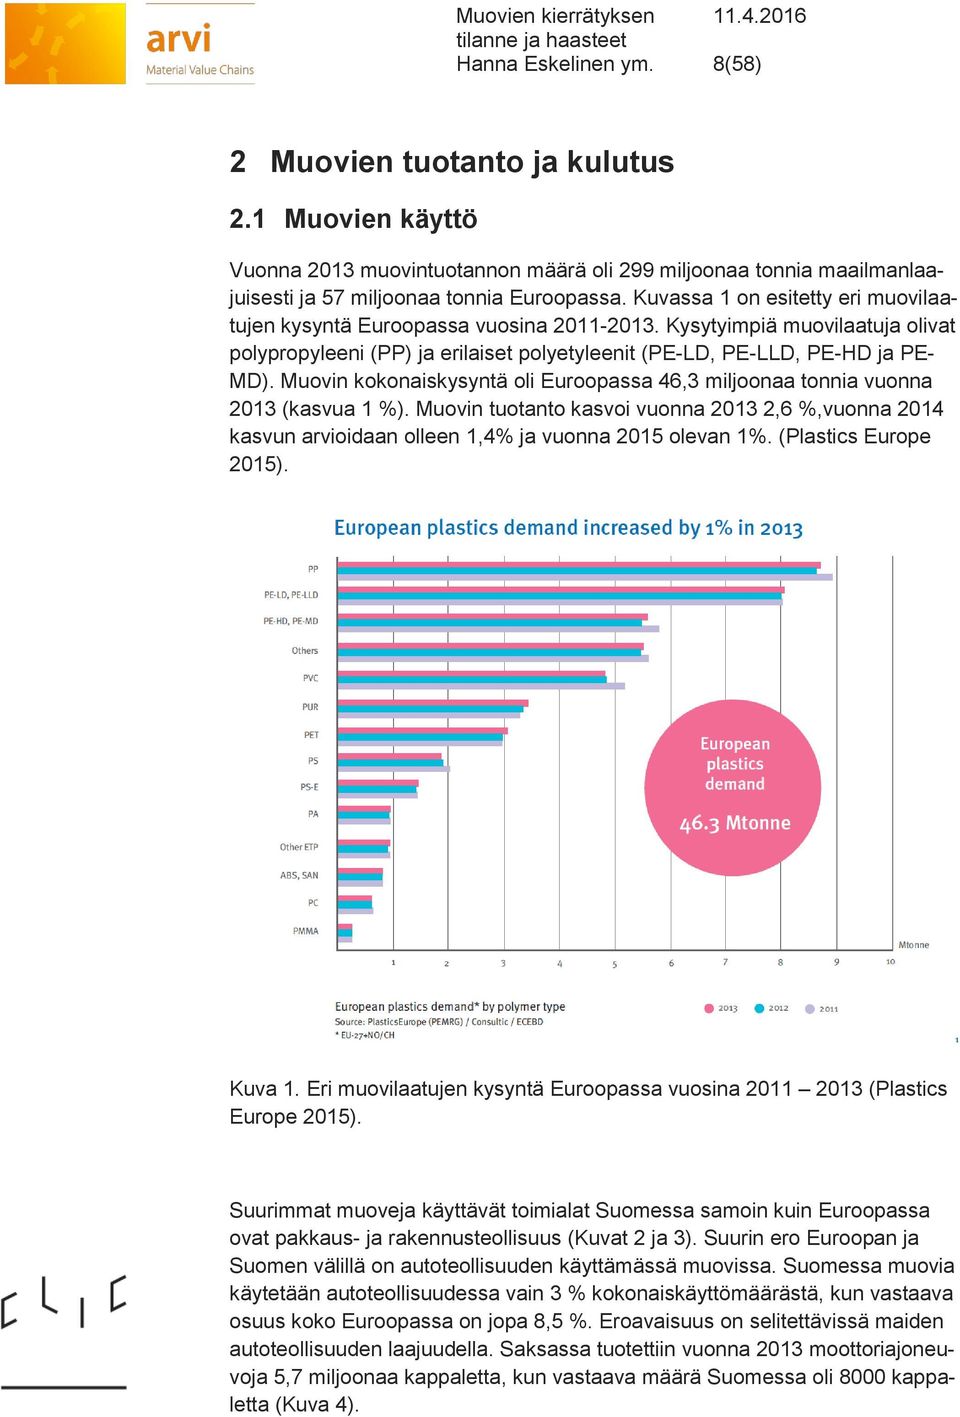 Muovin kokonaiskysyntä oli Euroopassa 46,3 miljoonaa tonnia vuonna 2013 (kasvua 1 %). Muovin tuotanto kasvoi vuonna 2013 2,6 %,vuonna 2014 kasvun arvioidaan olleen 1,4% ja vuonna 2015 olevan 1%.